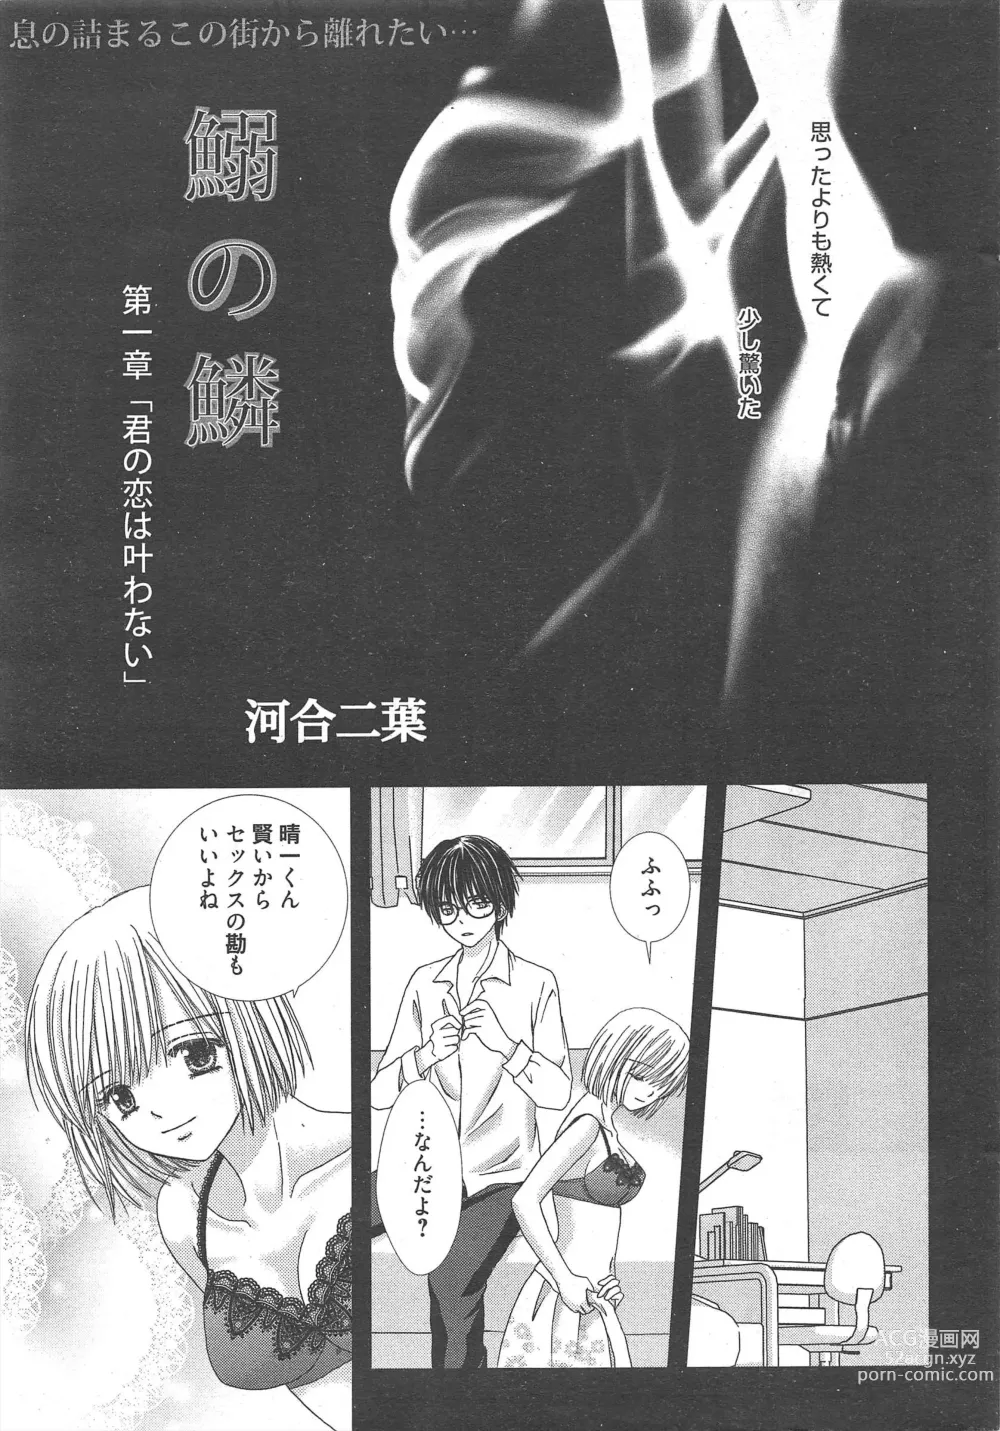 Page 7 of manga Manga Bangaichi 2012-12